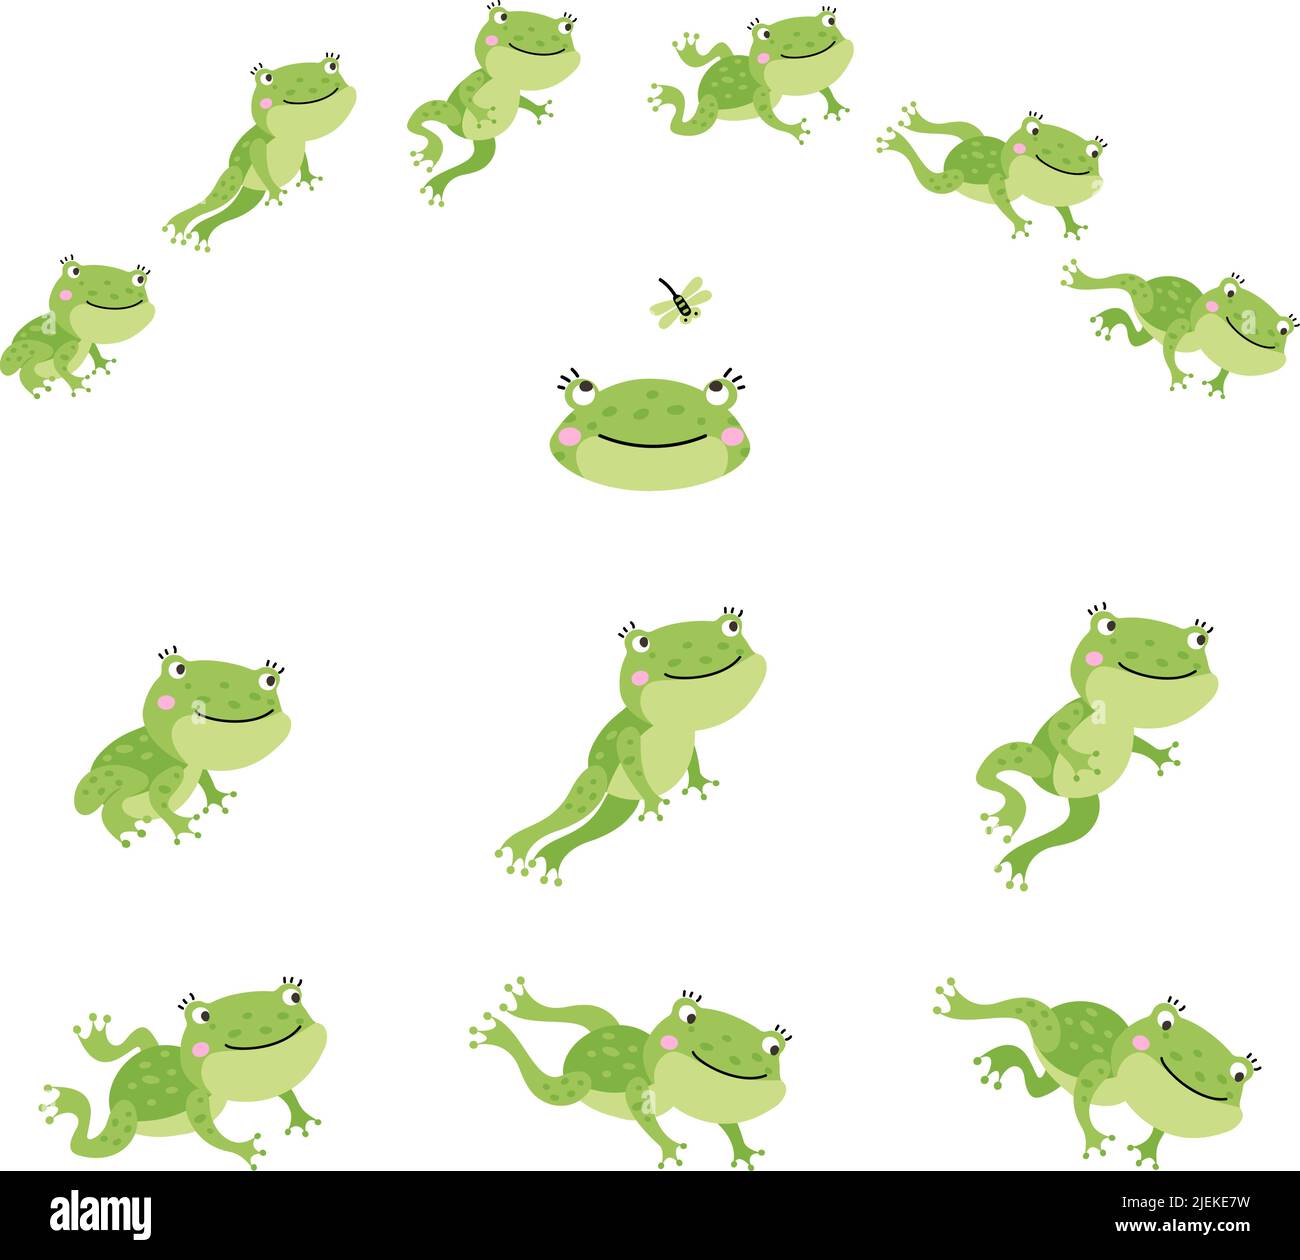 Dibujos animados de ranas fotografías e imágenes de alta resolución - Alamy